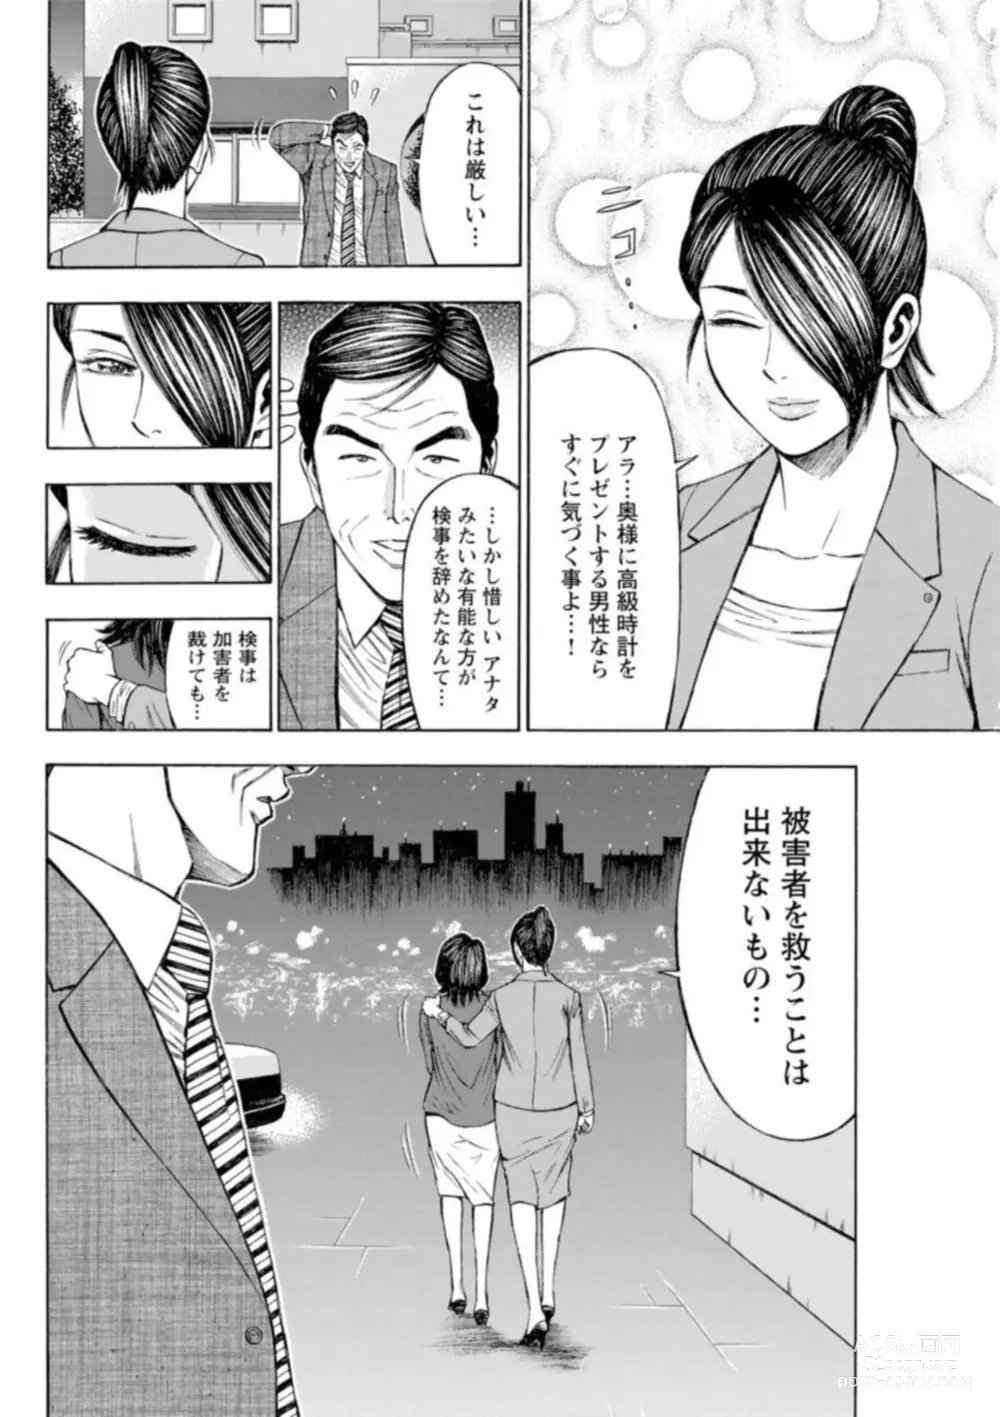 Page 244 of manga Muriyari Wakan de Choueki 0-nen -Onna Bengoshi Sex Chousa- 1